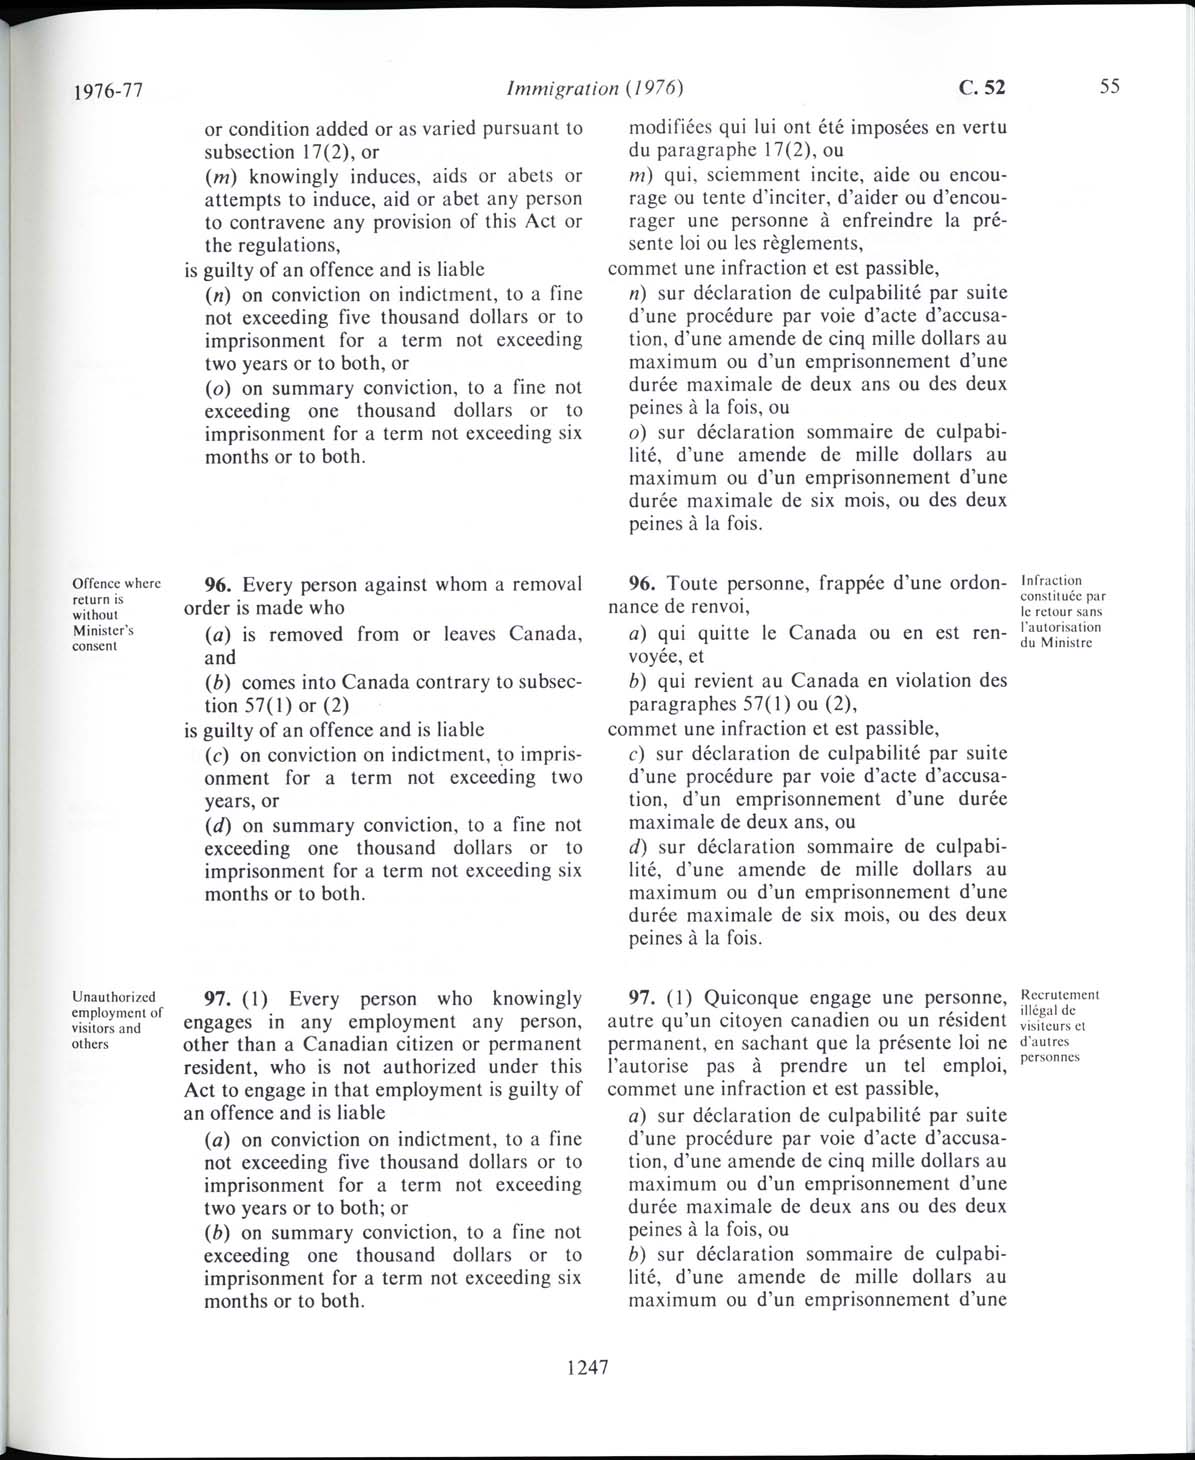 Page 1247 Loi sur l’immigration de 1976